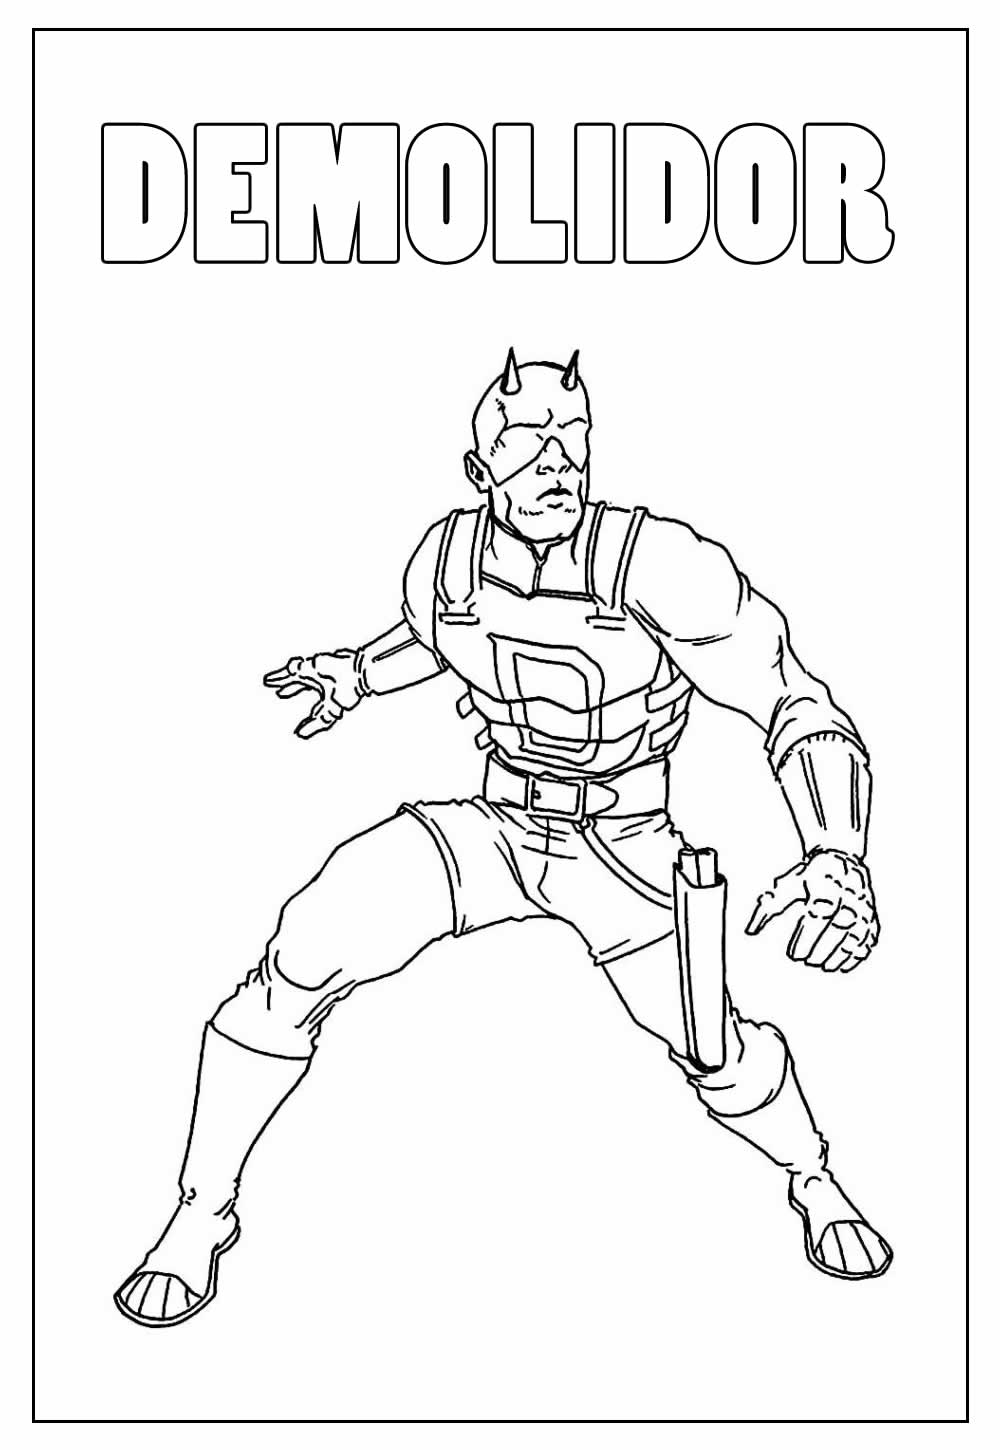 Desenho do Demolidor